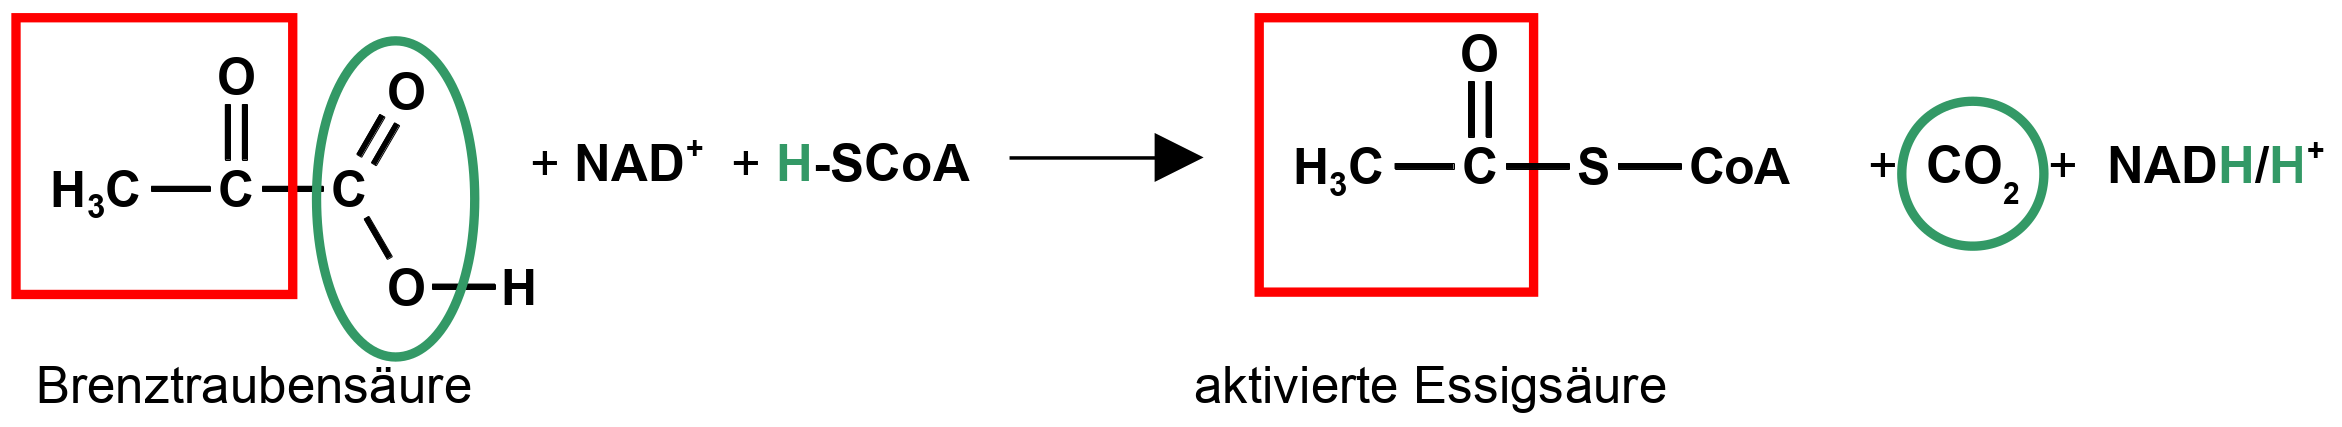 Oxidative Decarboxylierung: Aktivierung der Essigsäure